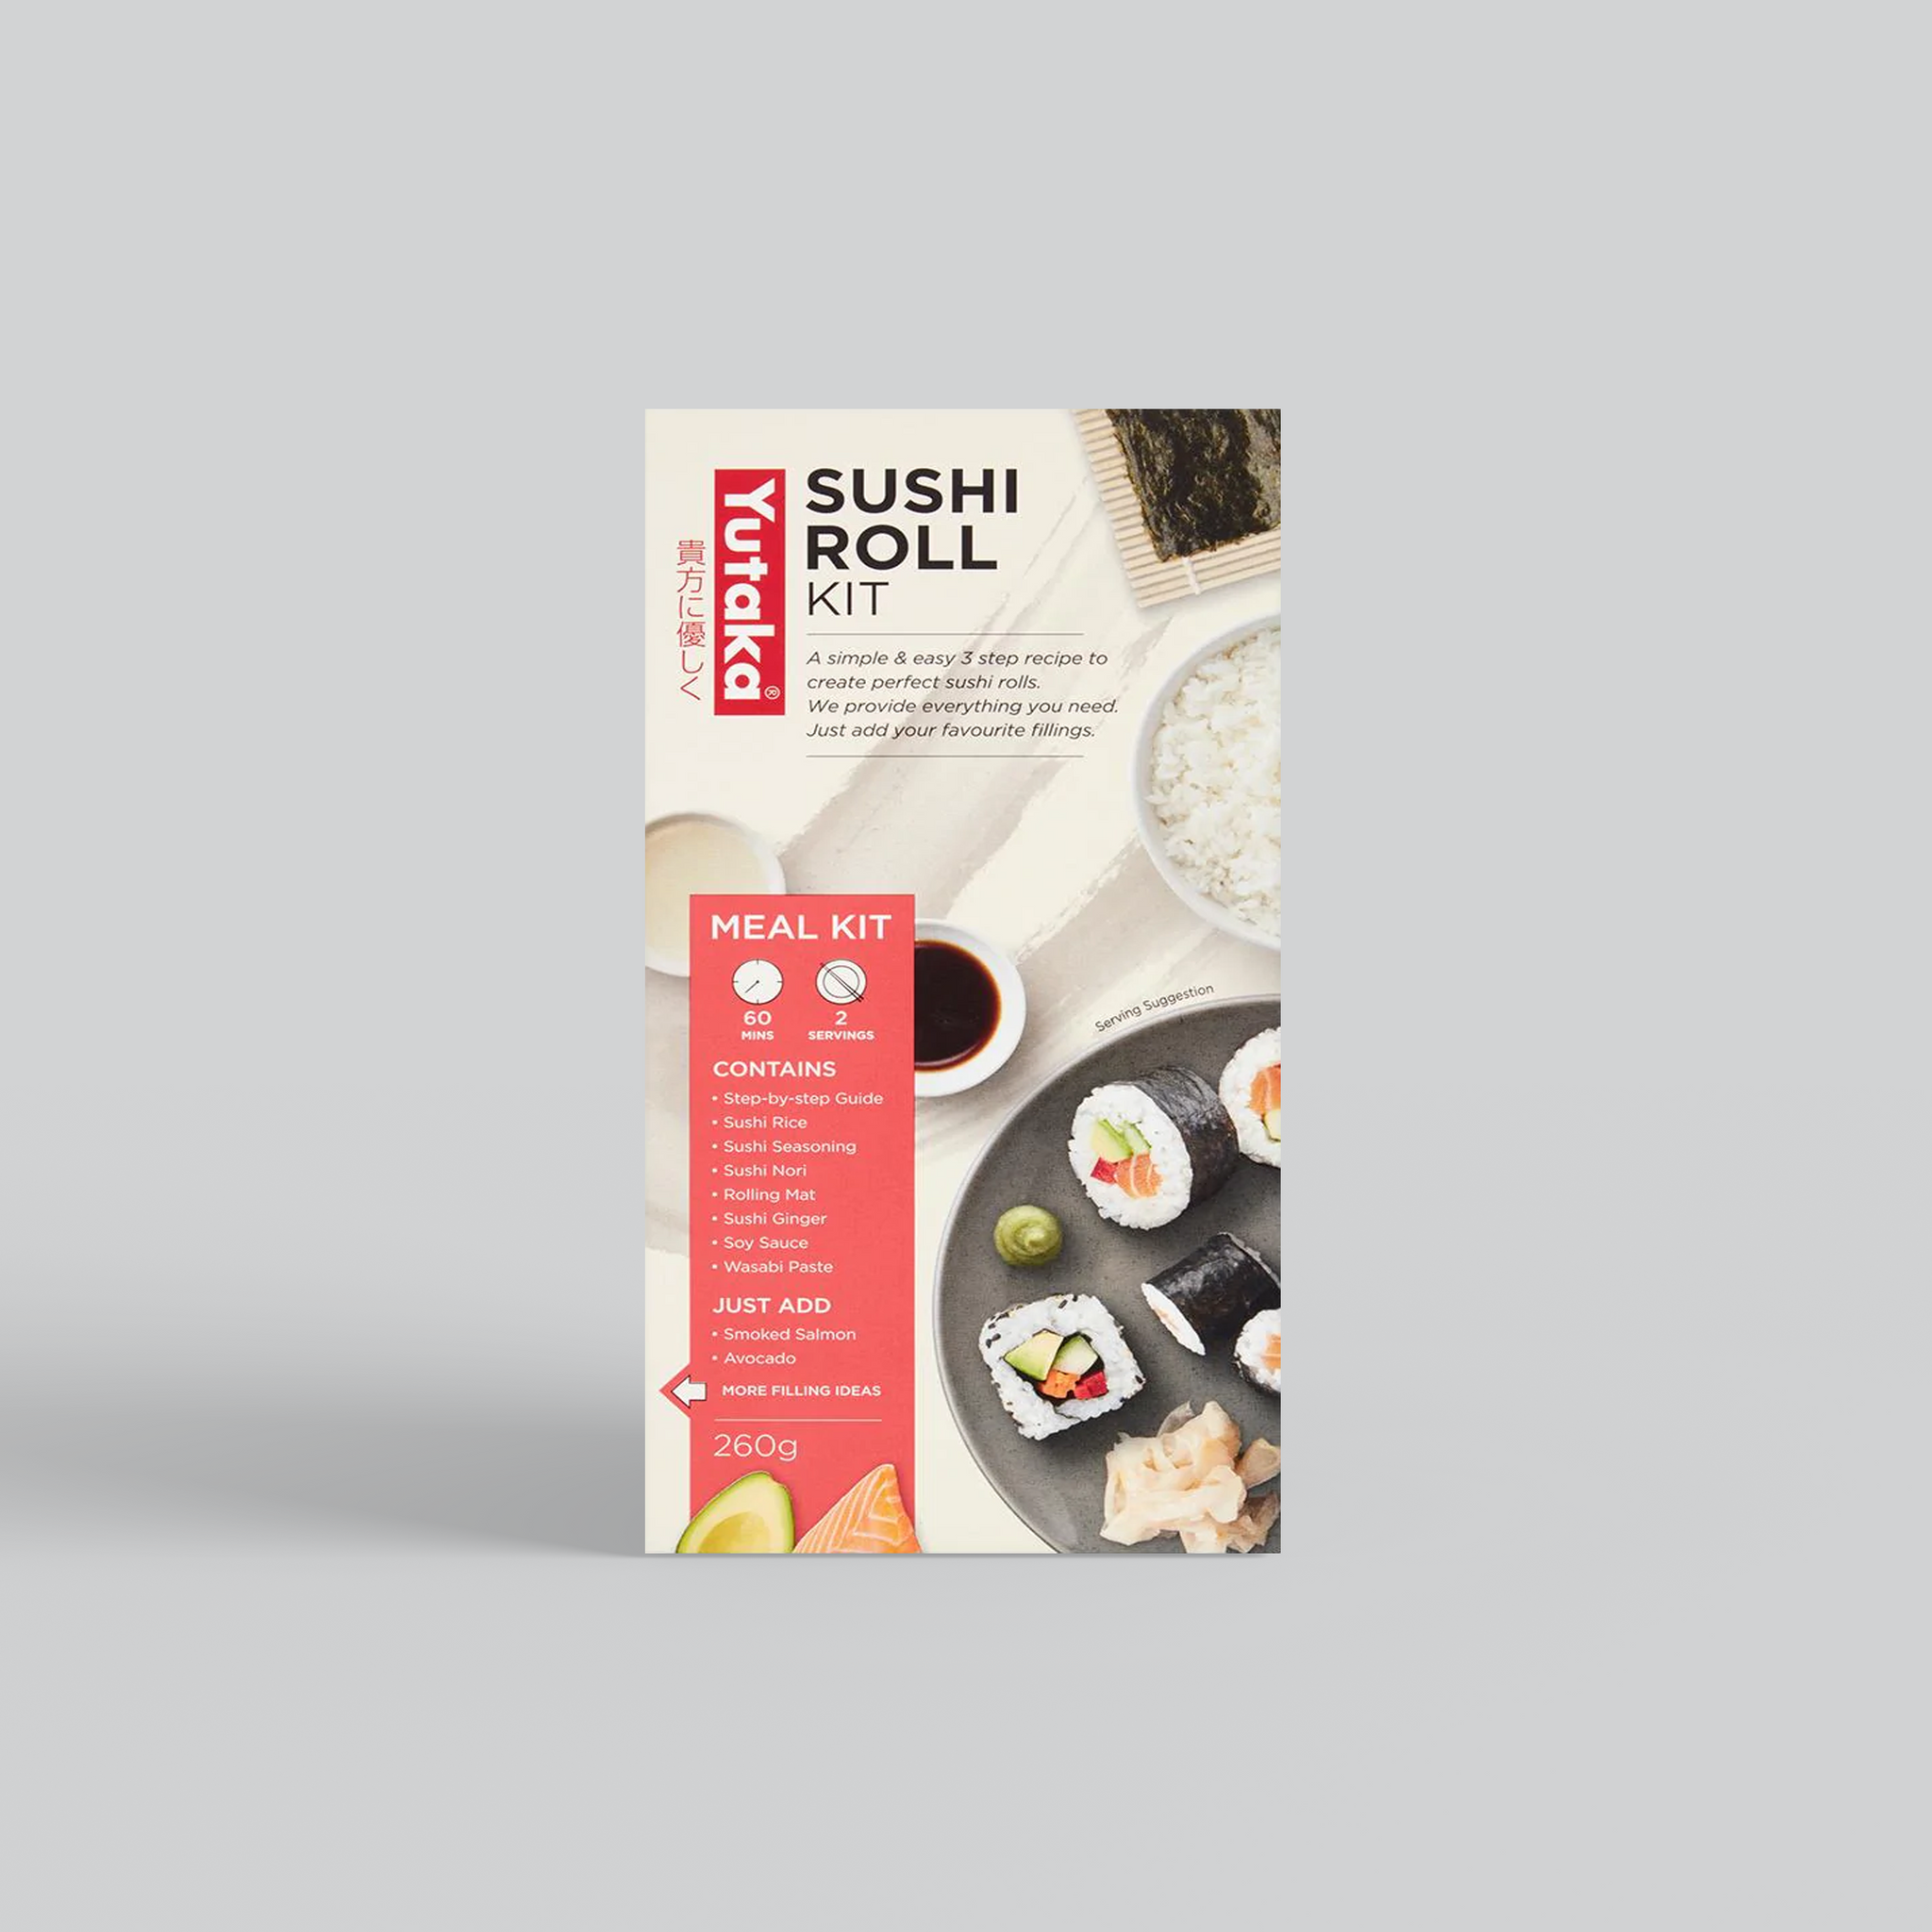 sushi making kit for 2 people